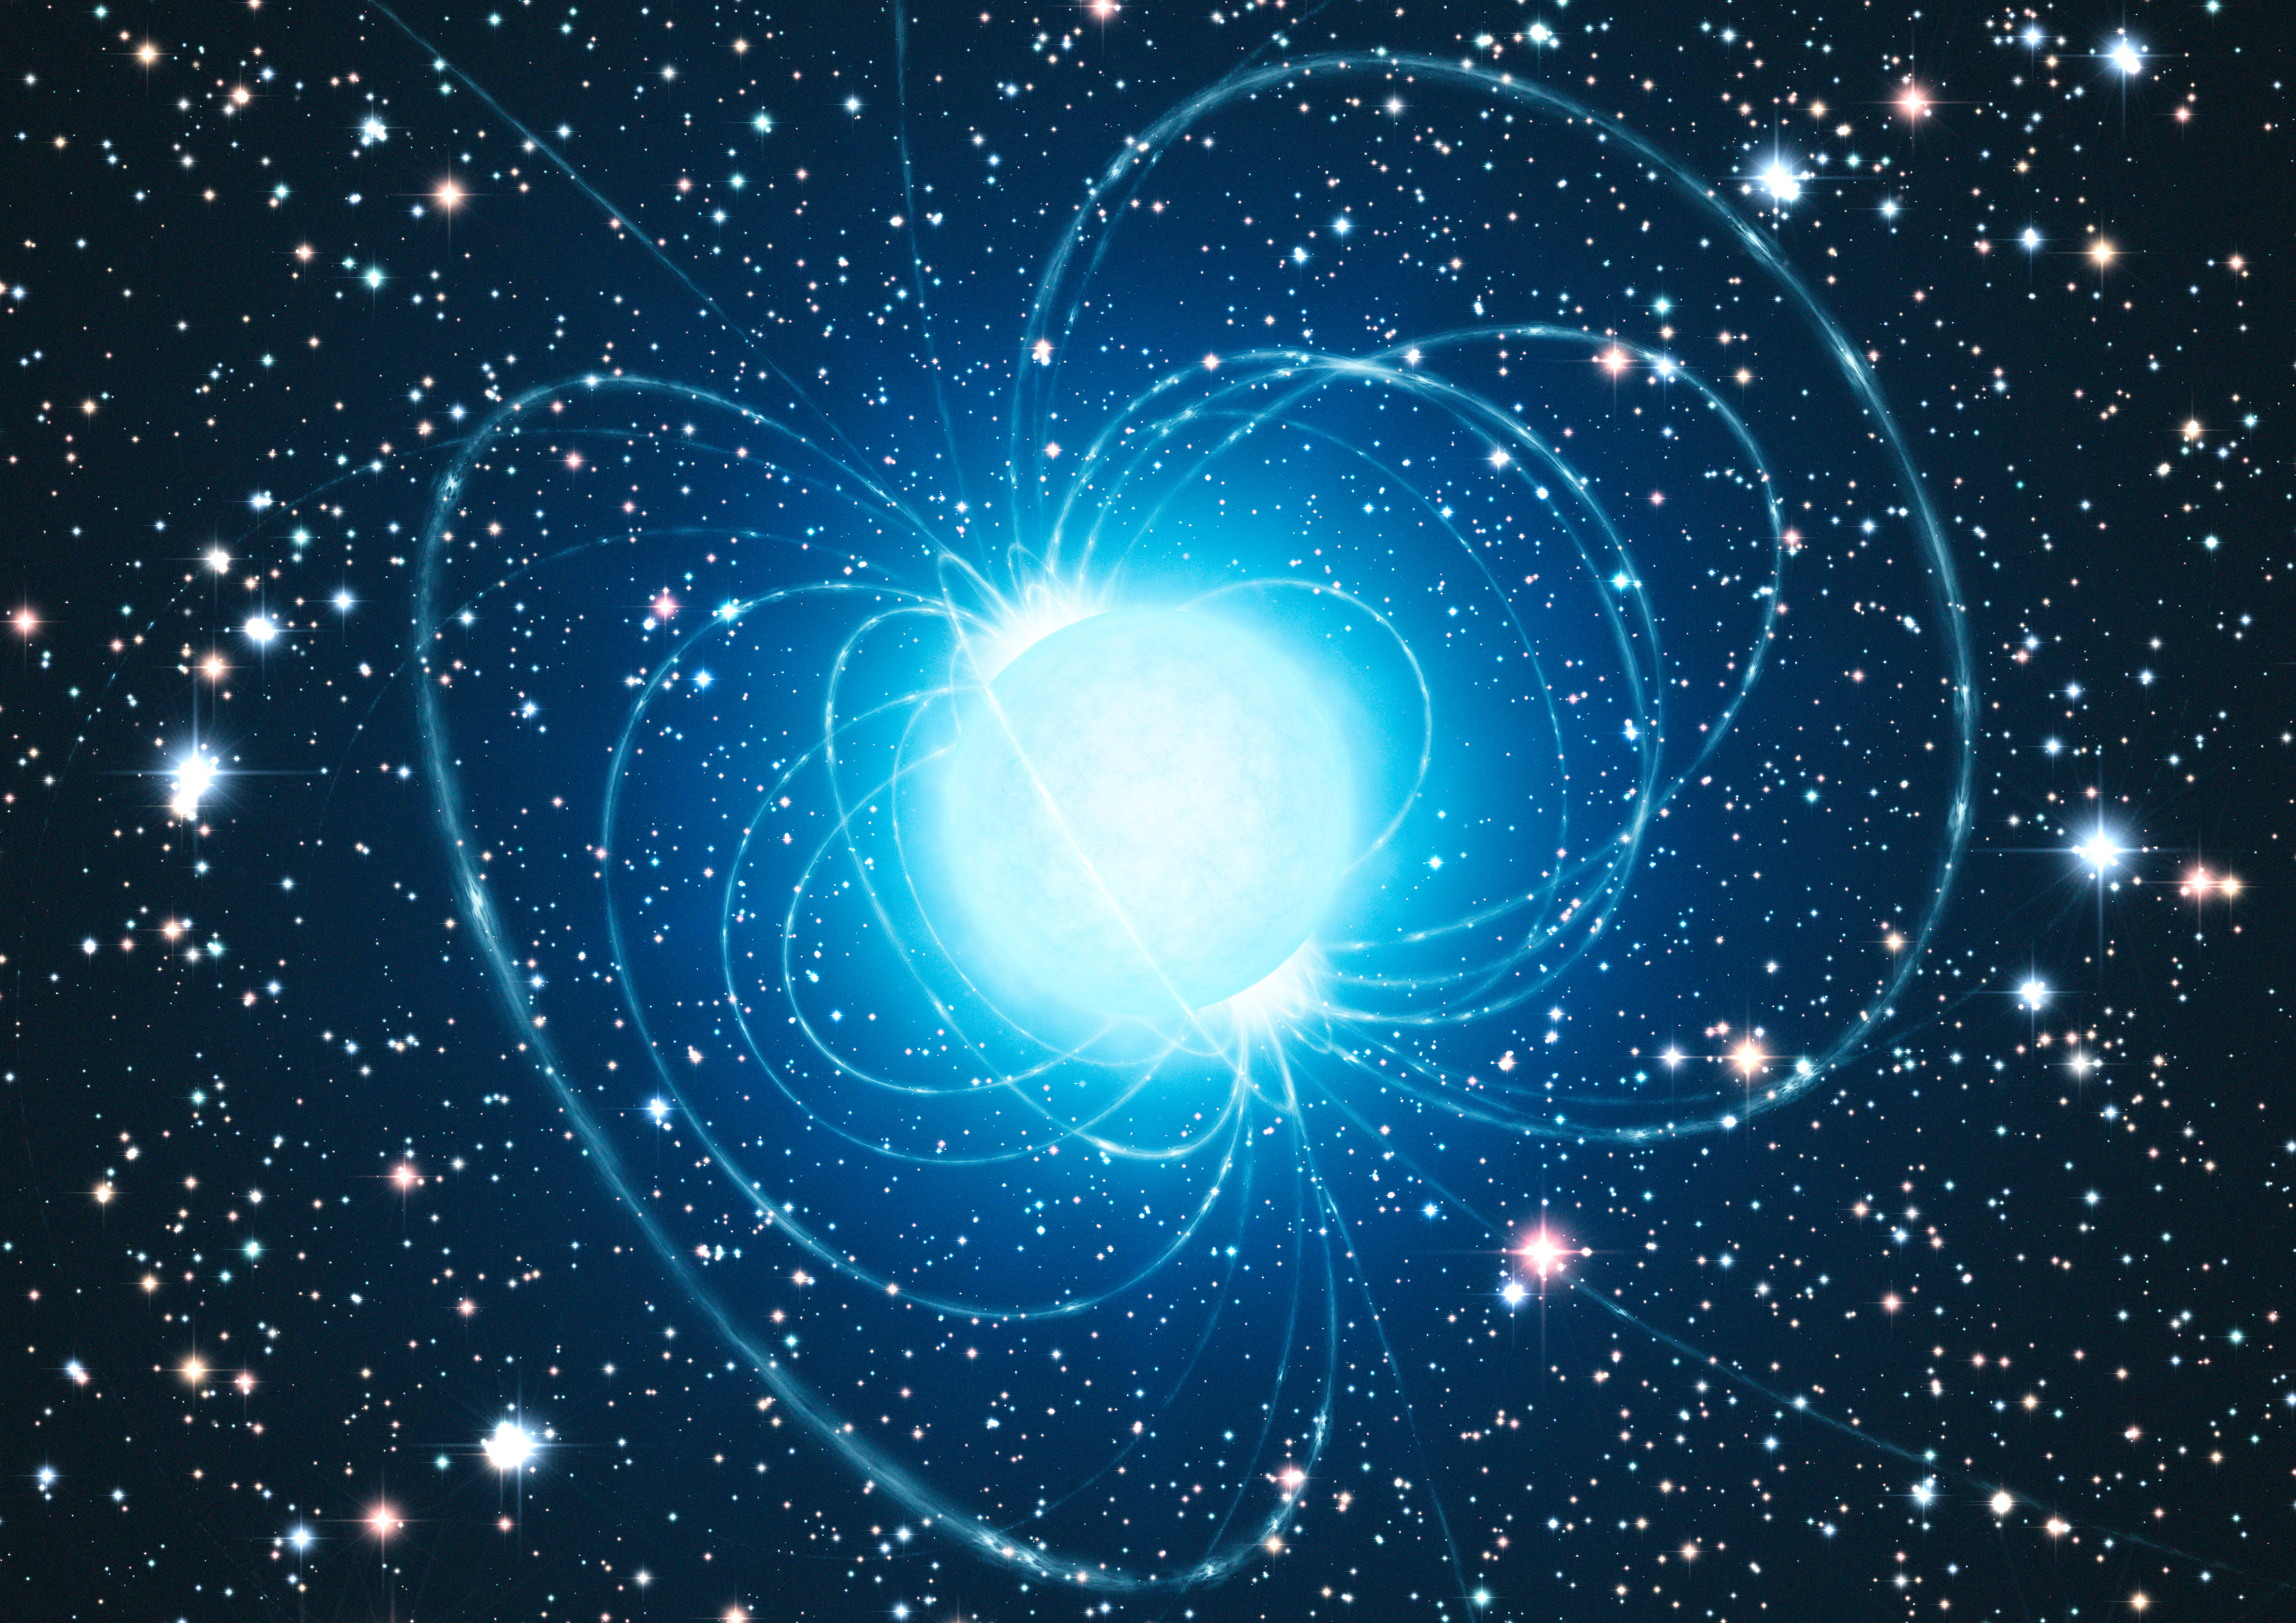 Na ilustracji (9): Wizja artystyczna gwiazdy neutronowej, która powstaje po kolapsie jądra gwiazdy masywnej i wybuchu tejże gwiazdy jako supernowej. Źródło: ESO/L. Calçada